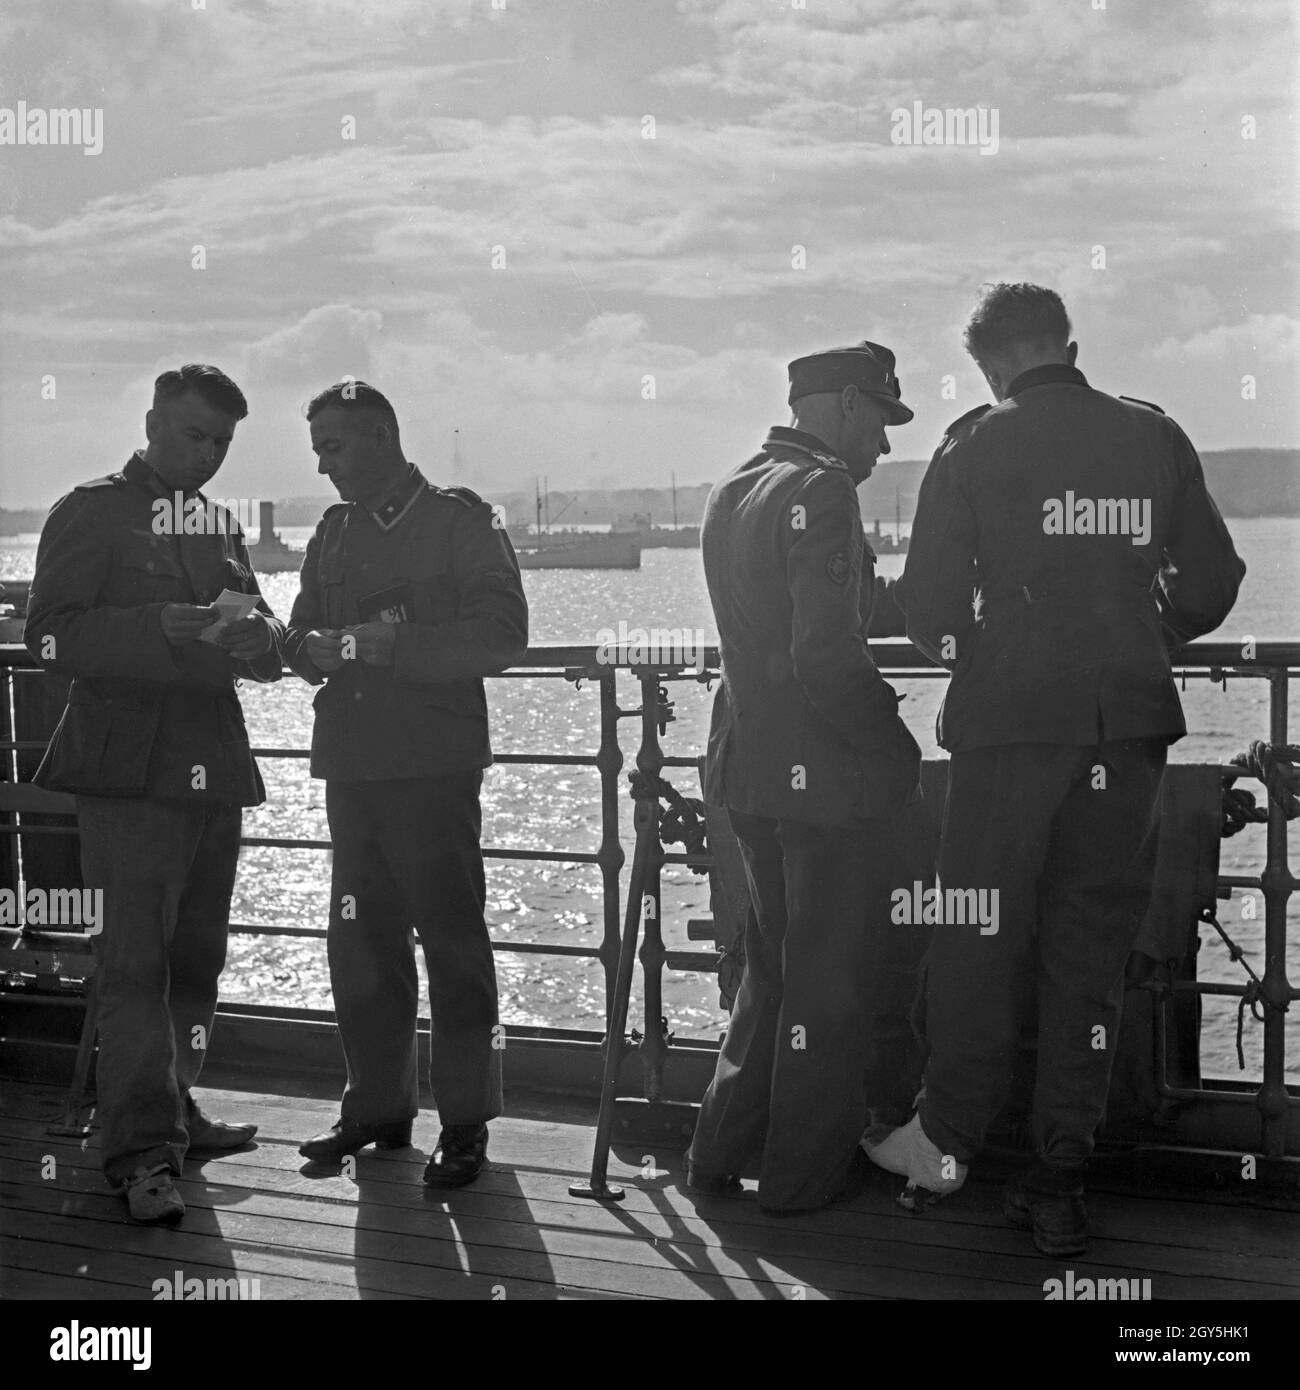 Original-Bildunterschrift: LAZARETTSCHIFF "Wilhelm Gustloff" - ein Deck des Lazarettschiffs Abend. Krankenhaus Schiff "Wilhelm Gustloff"-Abend auf dem Deck des Schiffes. Stockfoto